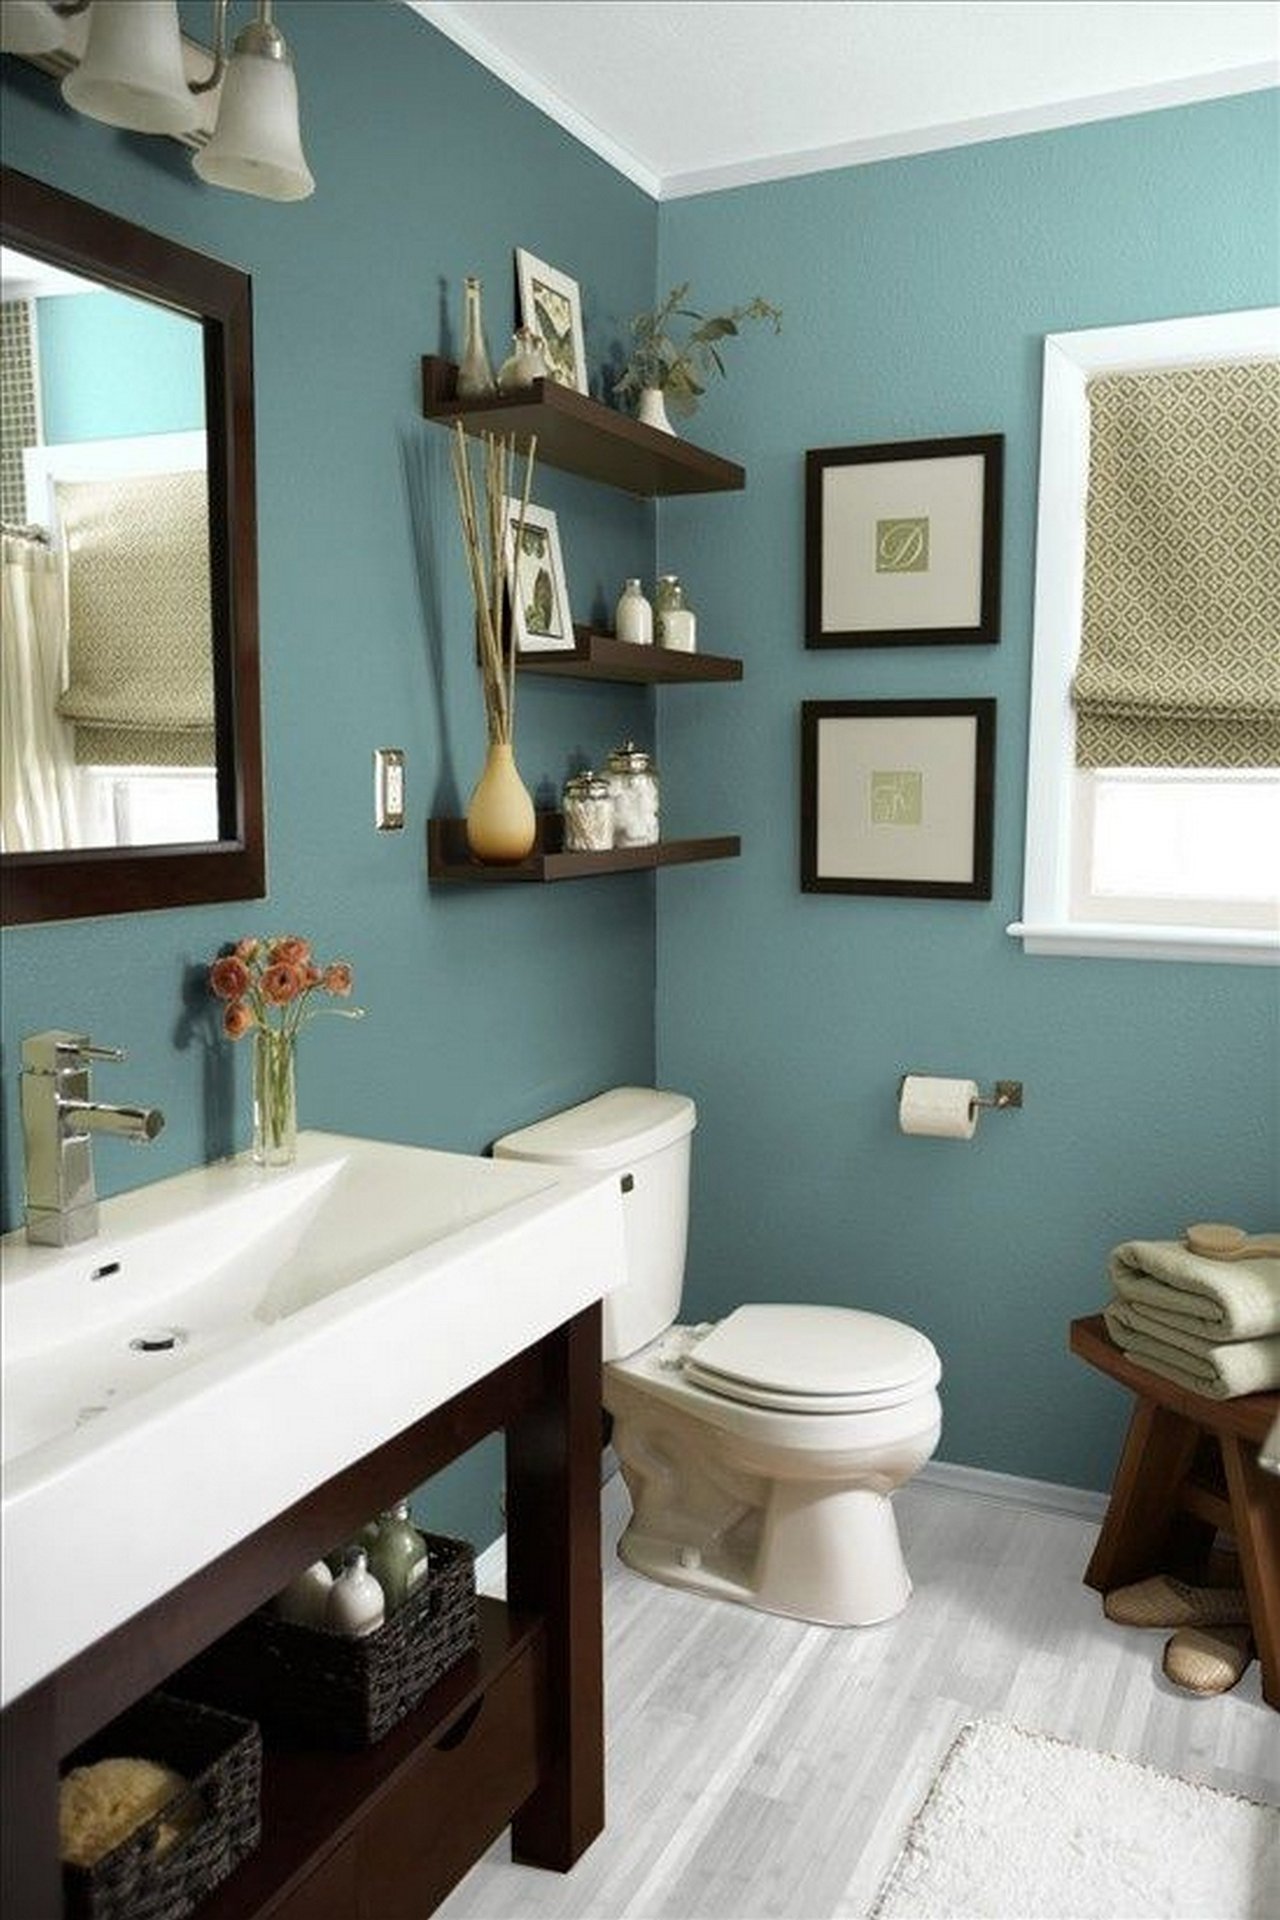 Какой краской можно покрасить в ванной. Крашенные стены в ванной. Ванная с окрашенными стенами. Интерьер ванной комнаты краской. Крашенные сокеы в ванной.